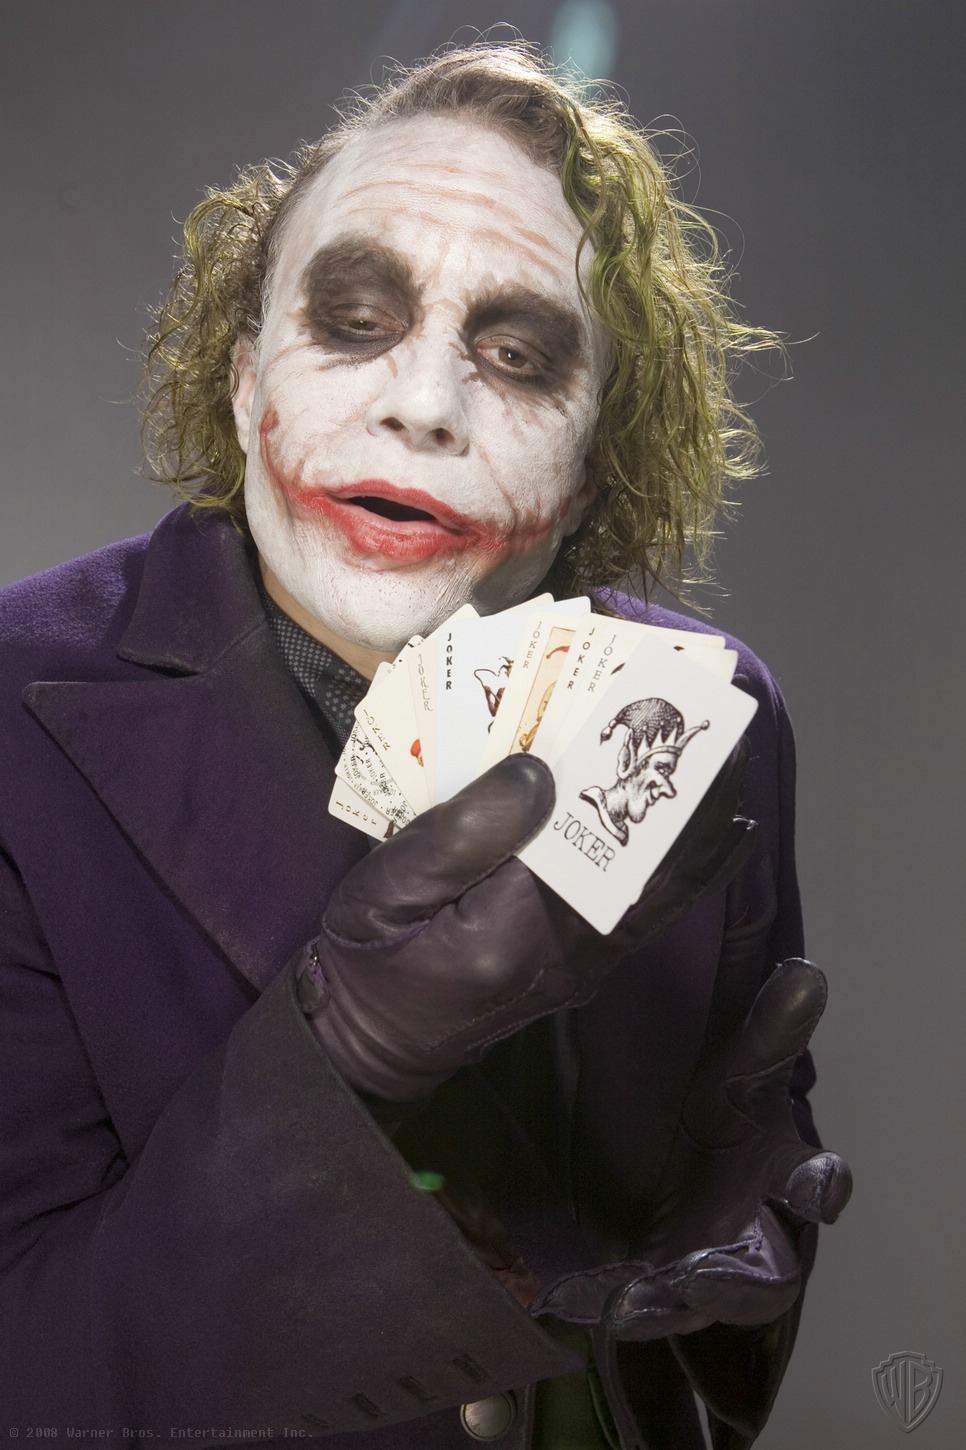 Joker - promo shoot for The Dark Knight - The Joker Photo (35524707